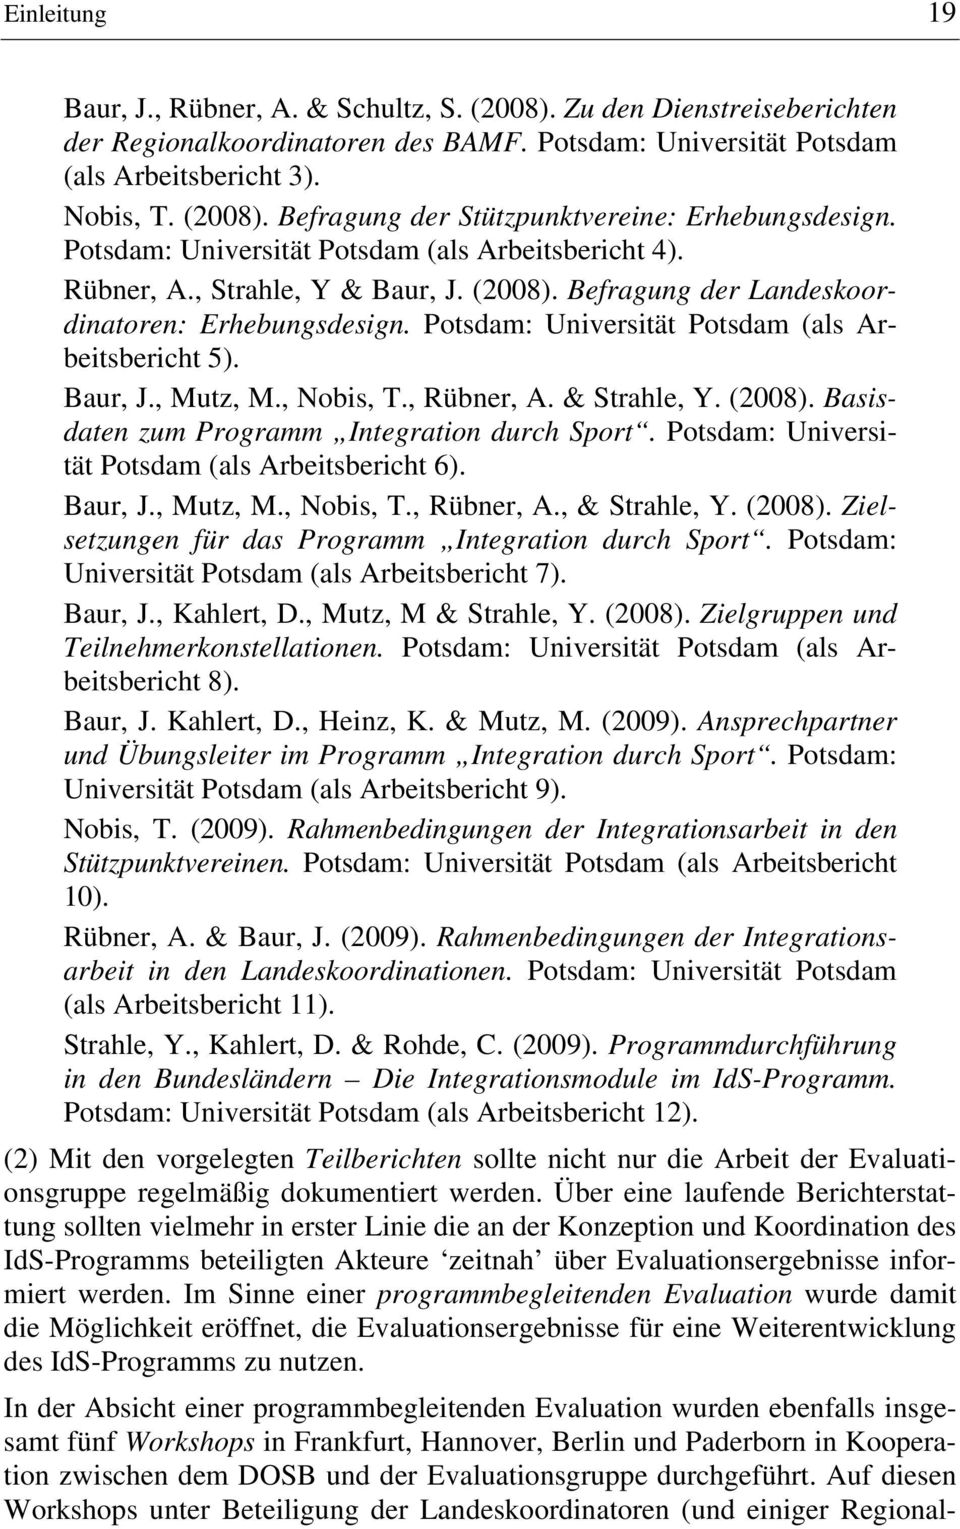 Baur, J., Mutz, M., Nobis, T., Rübner, A. & Strahle, Y. (2008). Basisdaten zum Programm Integration durch Sport. Potsdam: Universität Potsdam (als Arbeitsbericht 6). Baur, J., Mutz, M., Nobis, T., Rübner, A., & Strahle, Y.